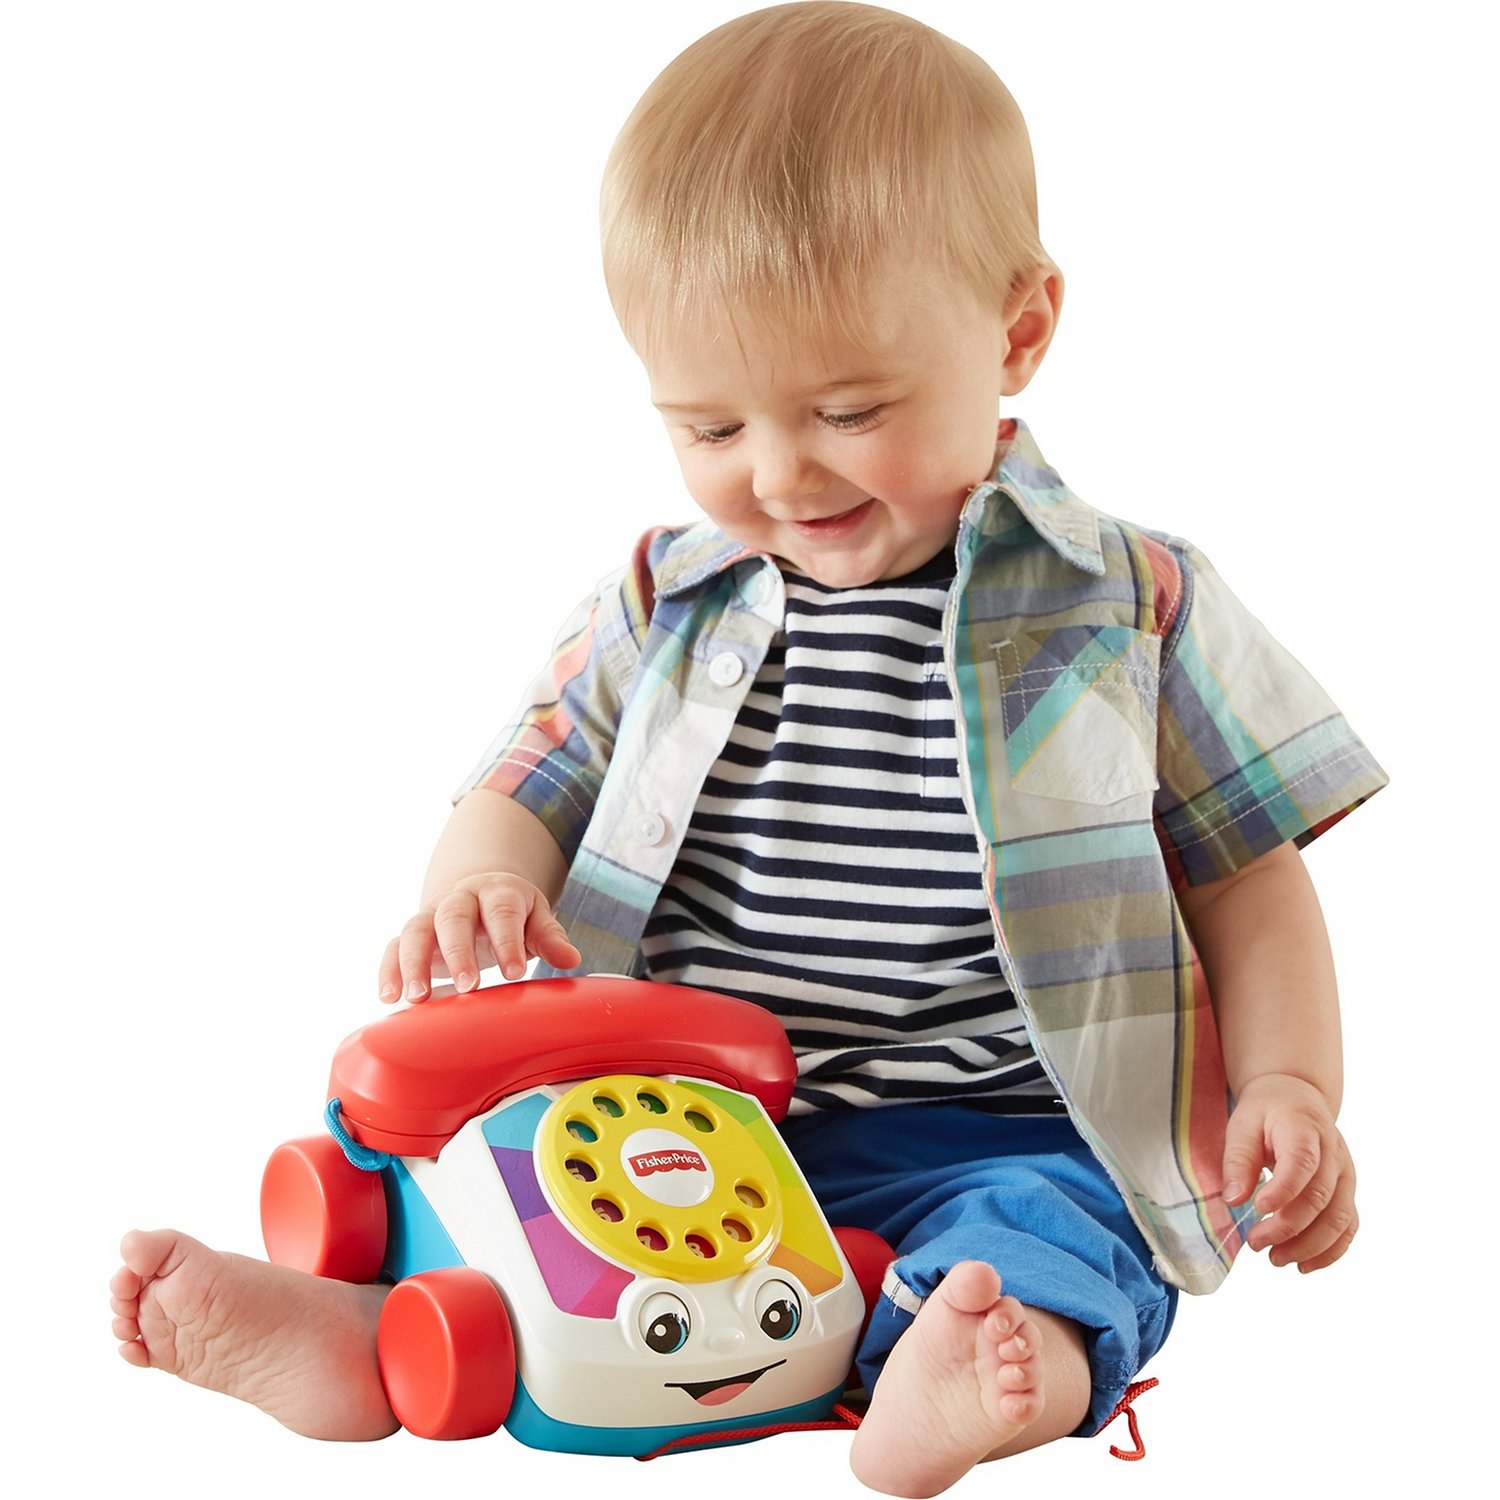 Развивающая игрушка Fisher Price Телефон на колесах FGW66